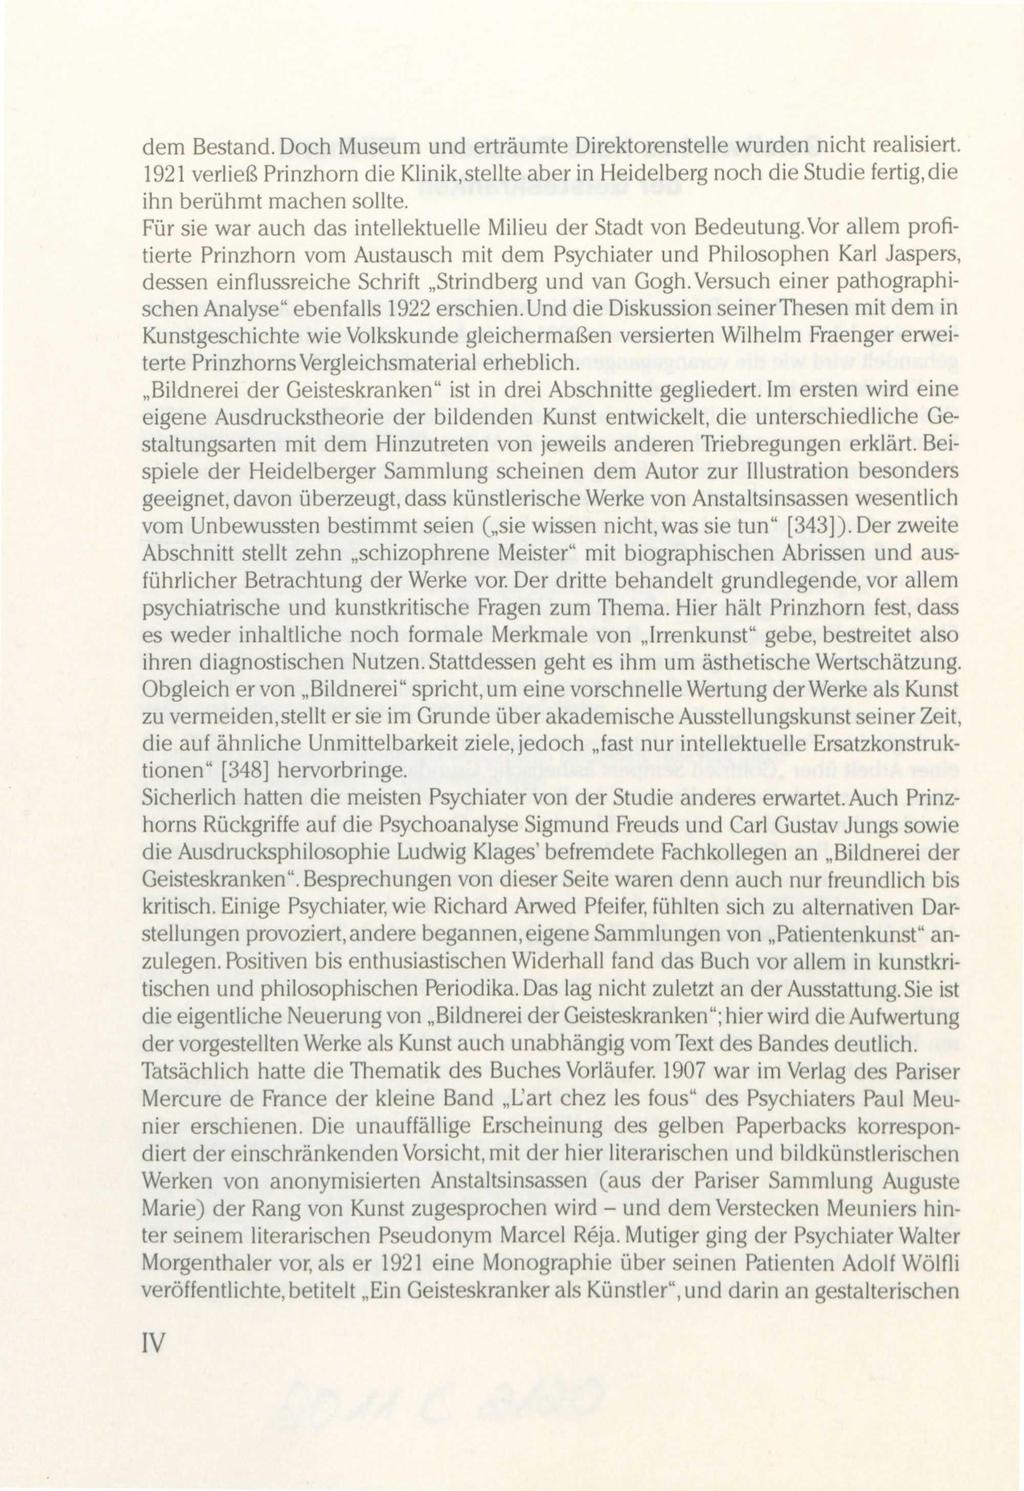 dem Bestand. Doch Museum und erträumte Direktorenstelle wurden nicht realisiert. 1921 verließ Prinzhorn die Klinik,stellte aber in Heidelberg noch die Studie fertig.die ihn berühmt machen sollte.